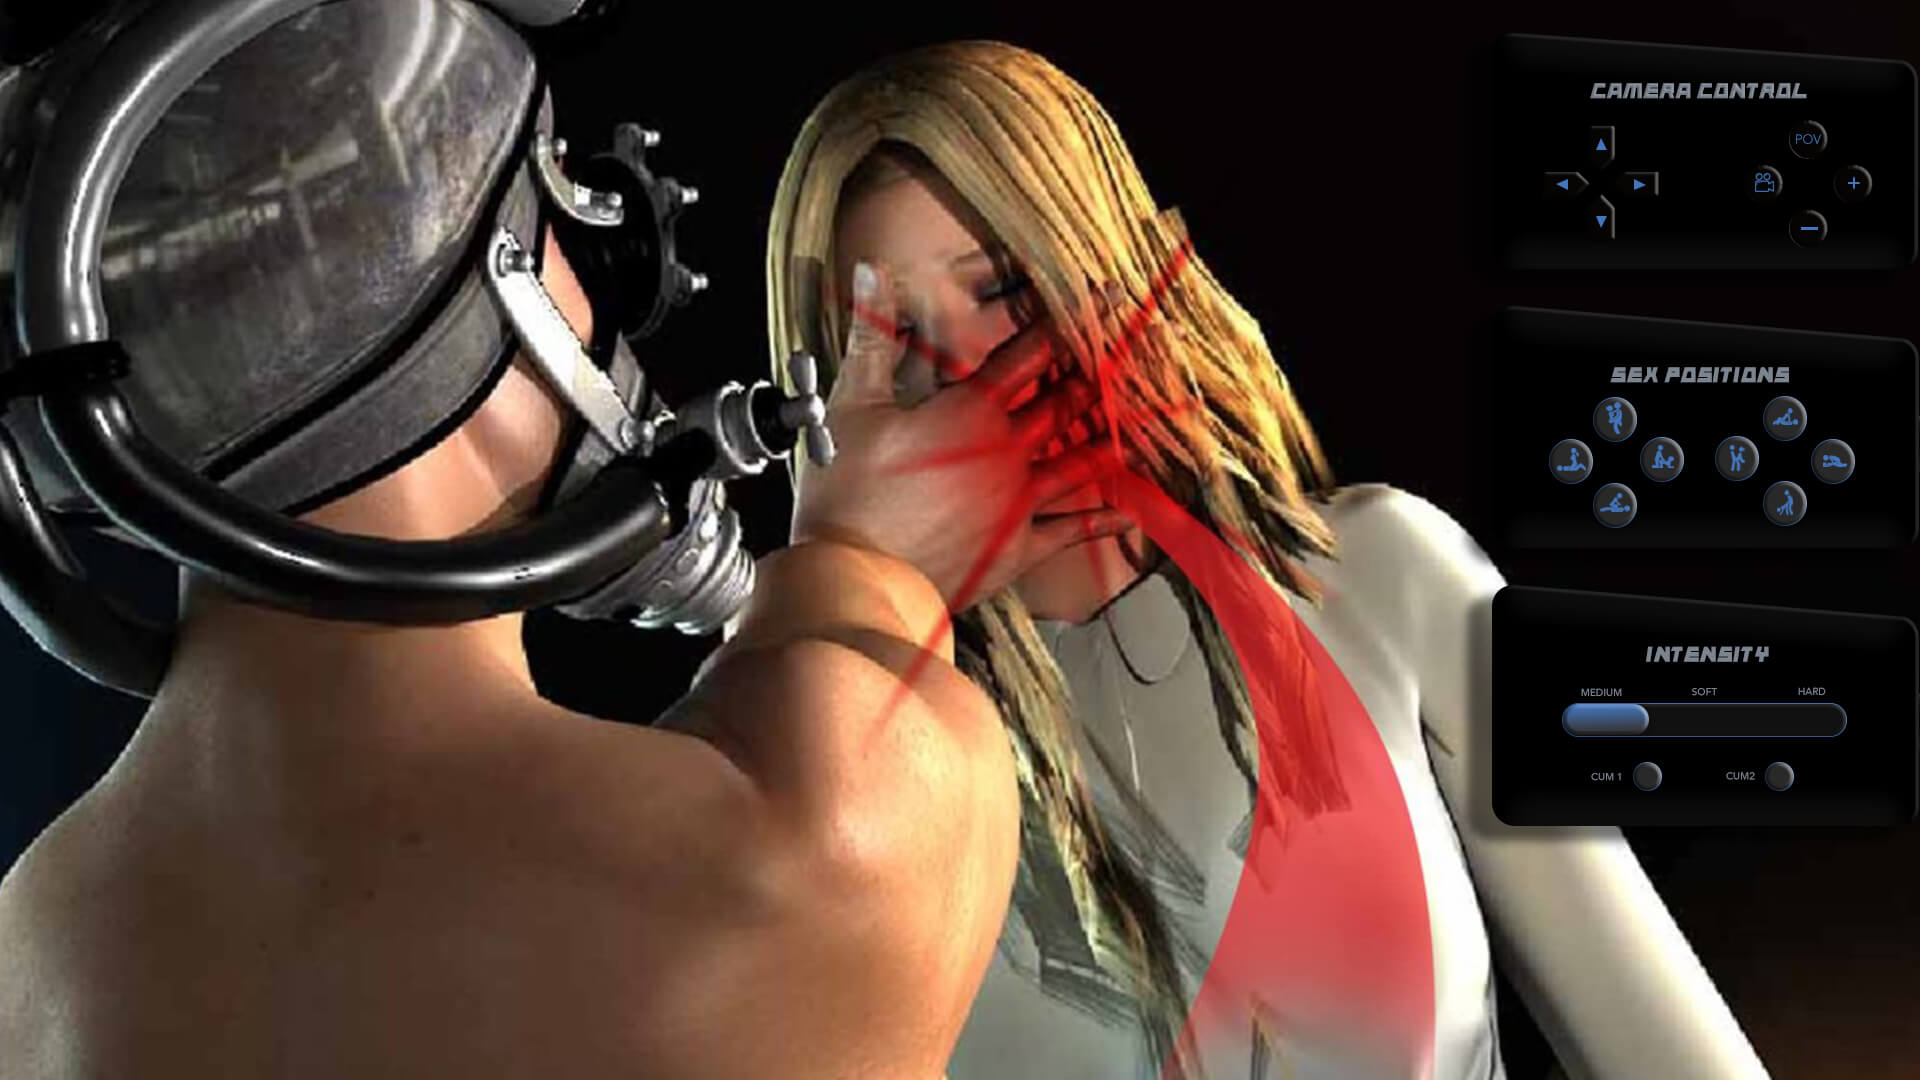 violent virtual sex games